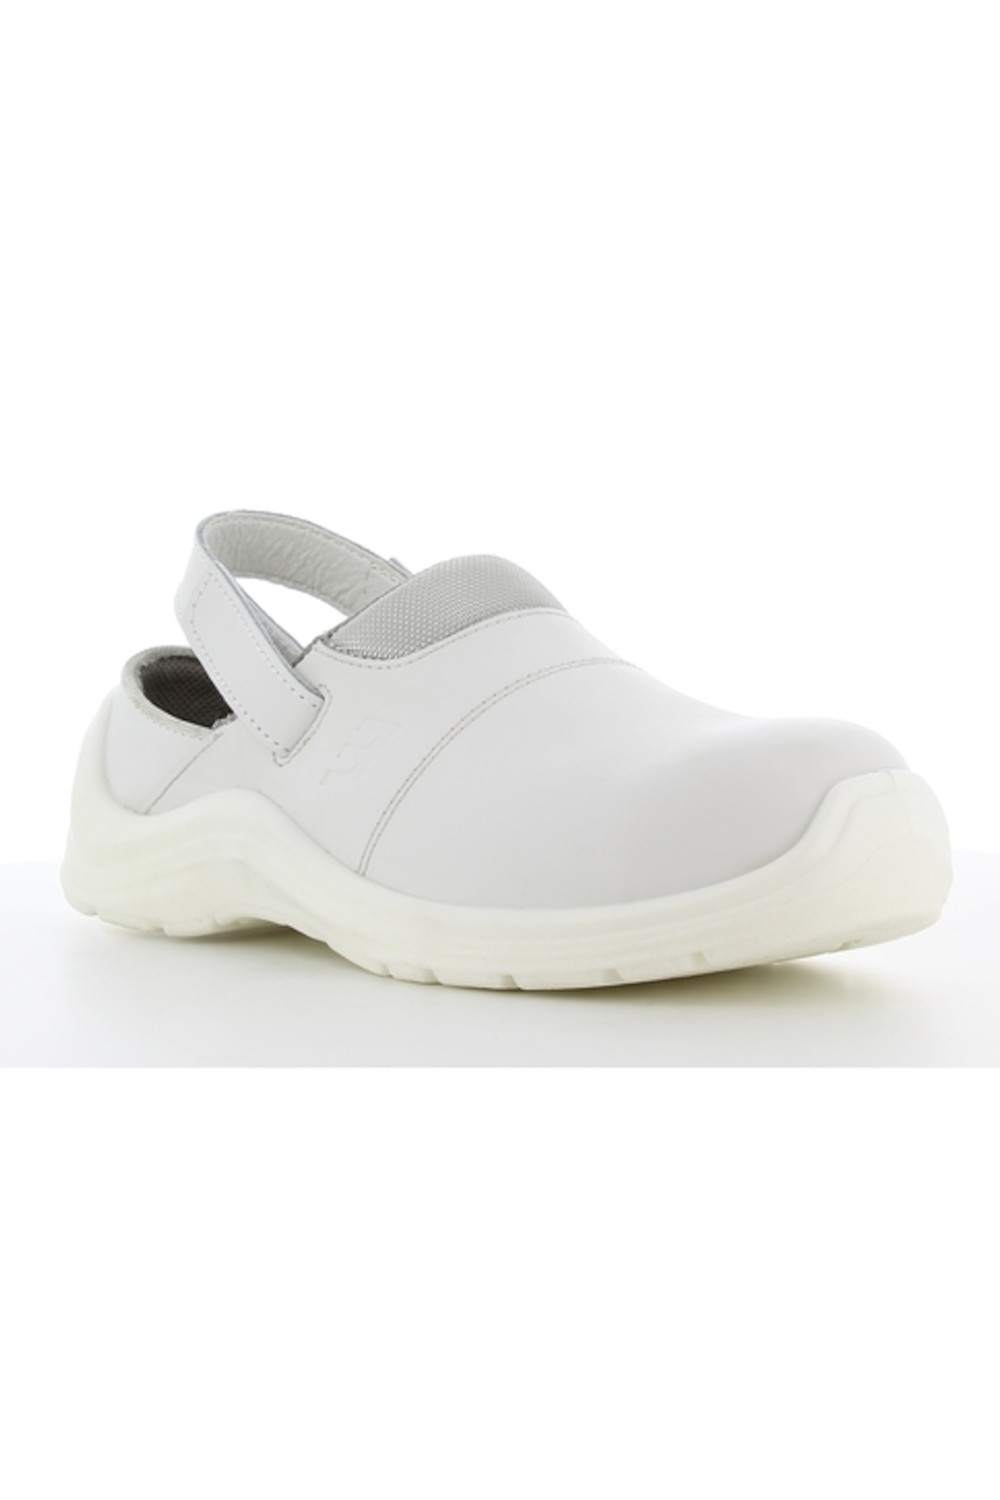 Buty CORTADO obuwie medyczne ochronne kolor biały